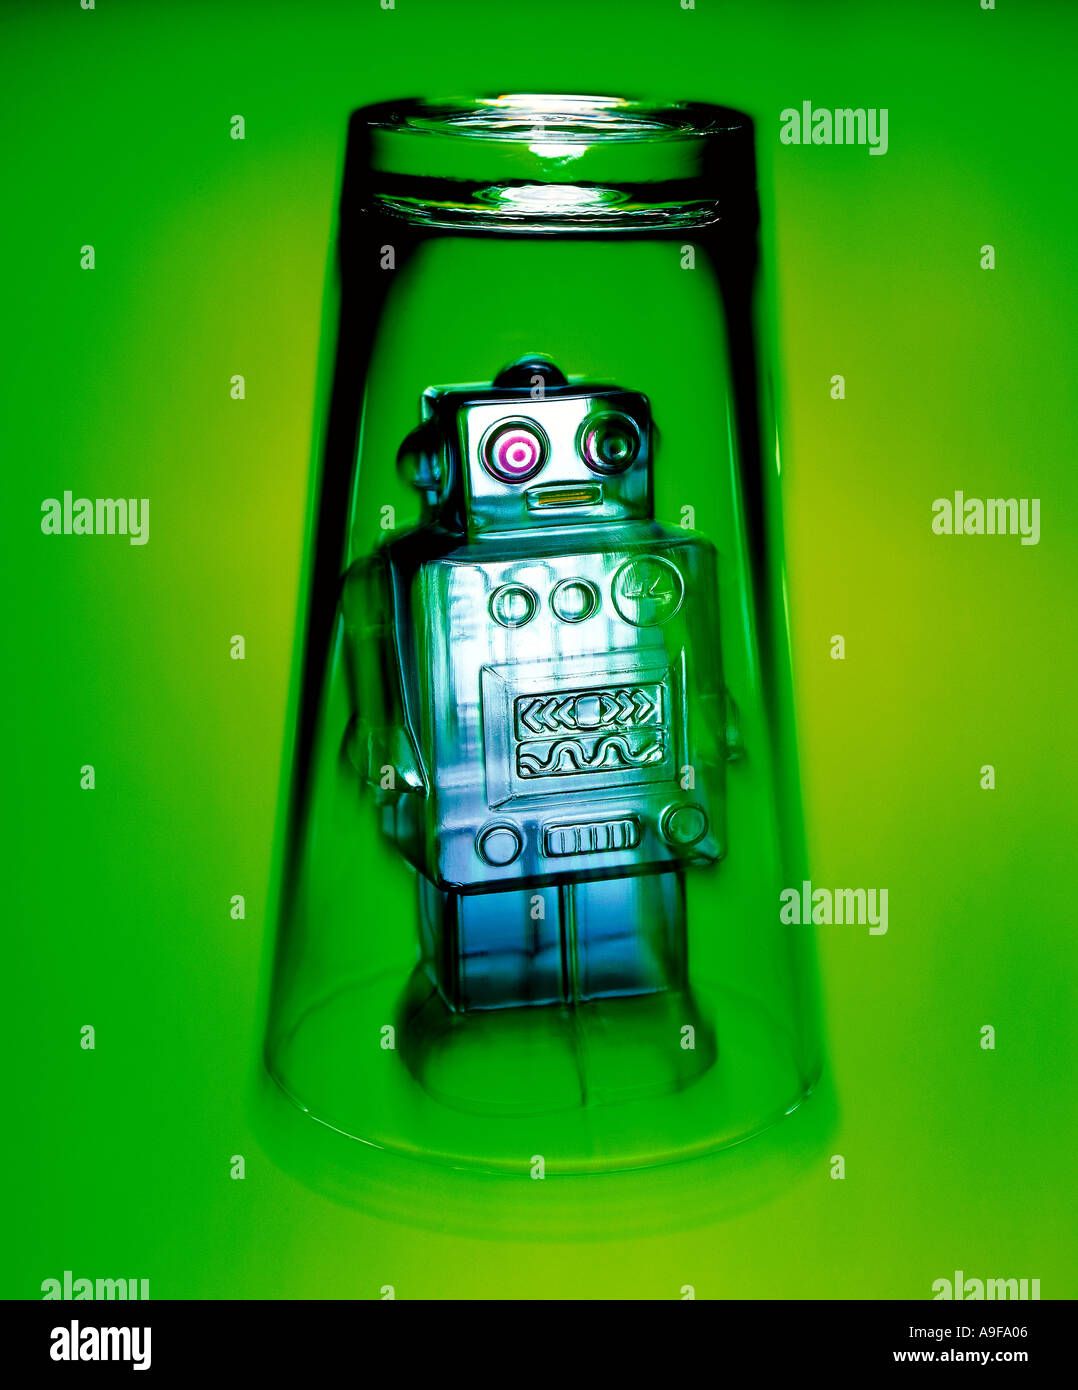 Robot giocattolo intrappolato in vetro sulla superficie verde Foto Stock